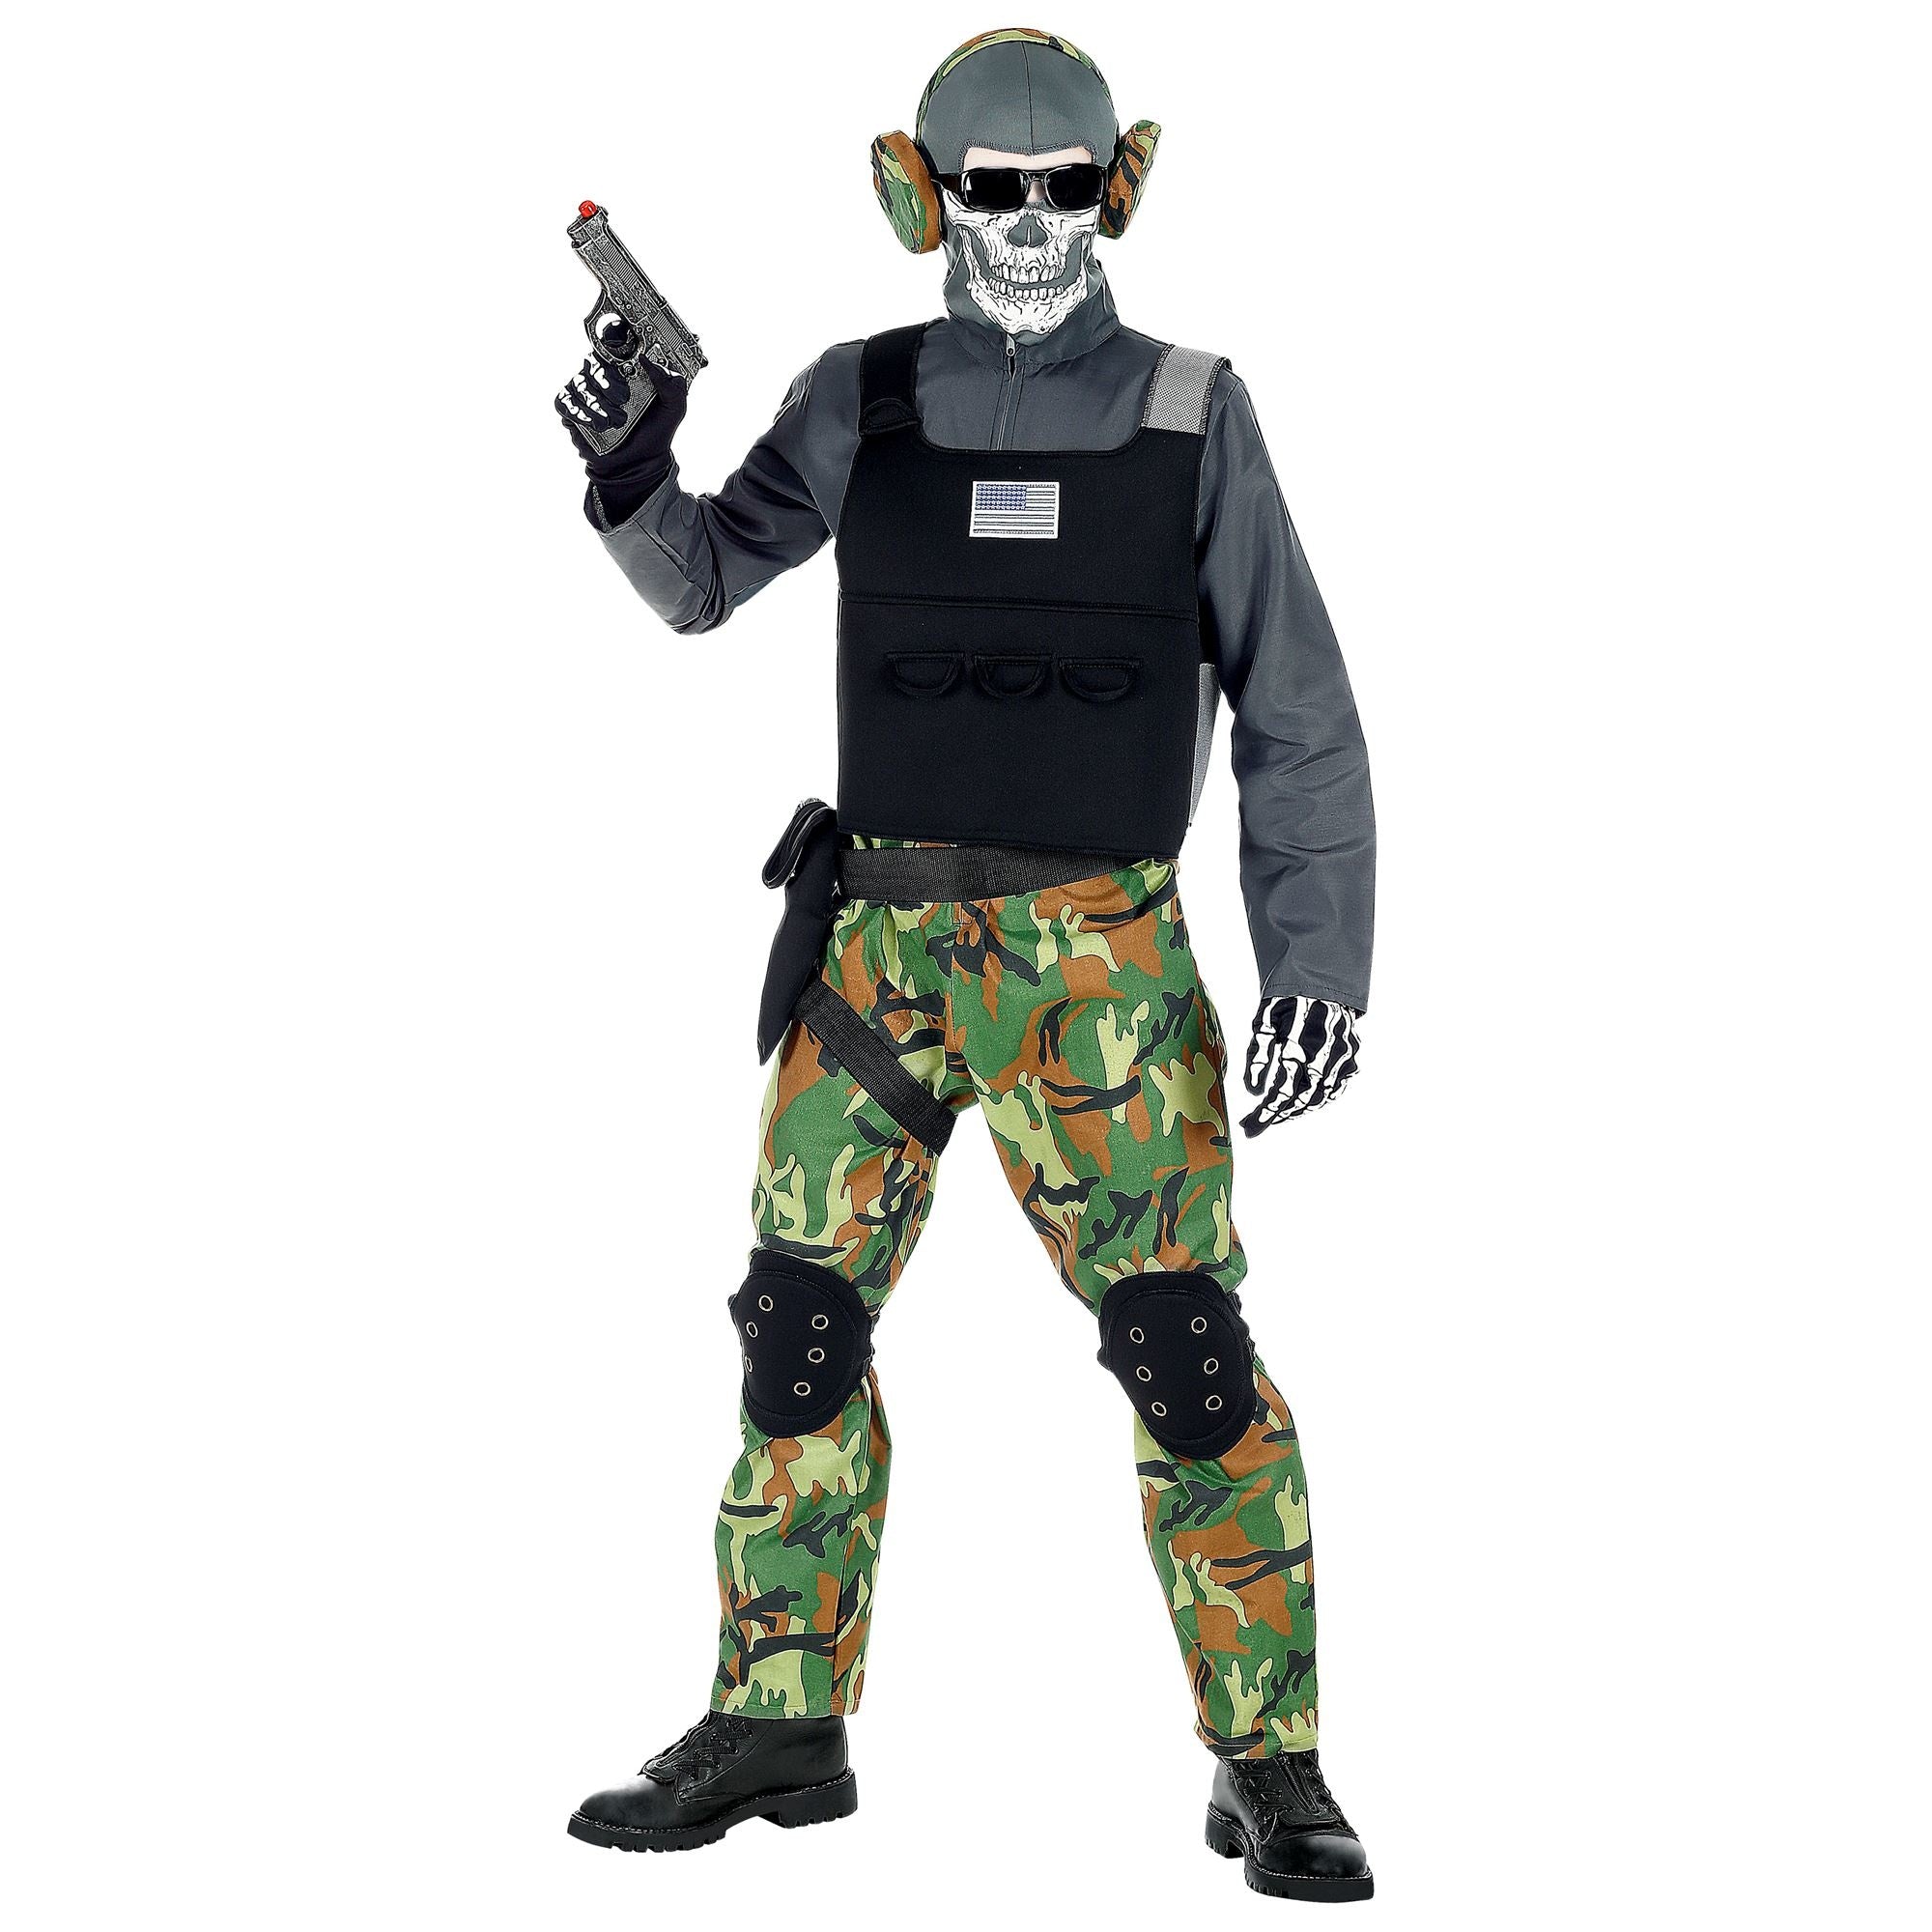 Widmann - Leger & Oorlog Kostuum - Zombie Soldaat Eeuwige Slagvelden Groen Camouflage - Jongen - groen,zwart,grijs - Maat 128 - Halloween - Verkleedkleding